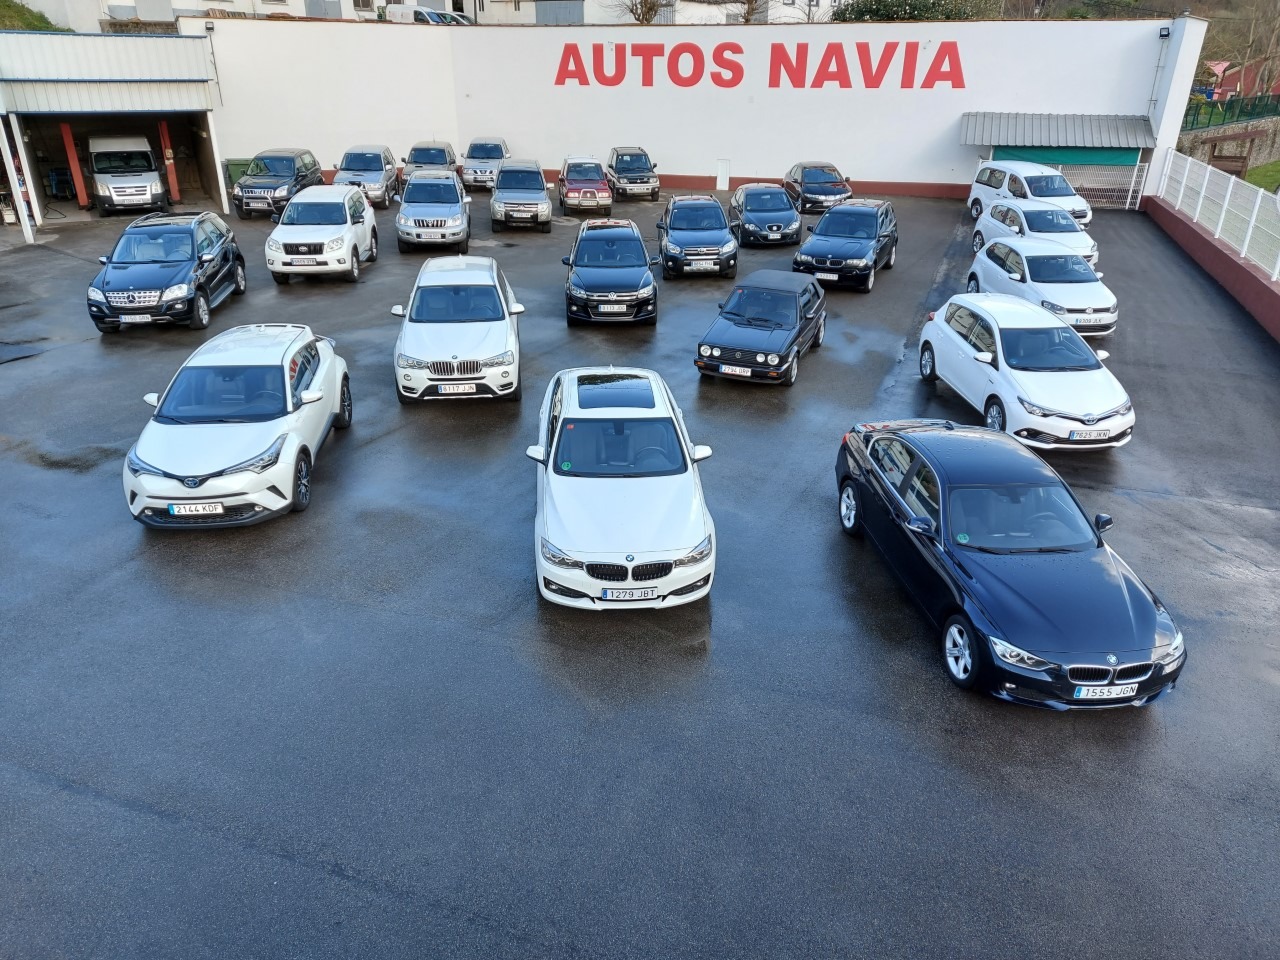 Autos Navia